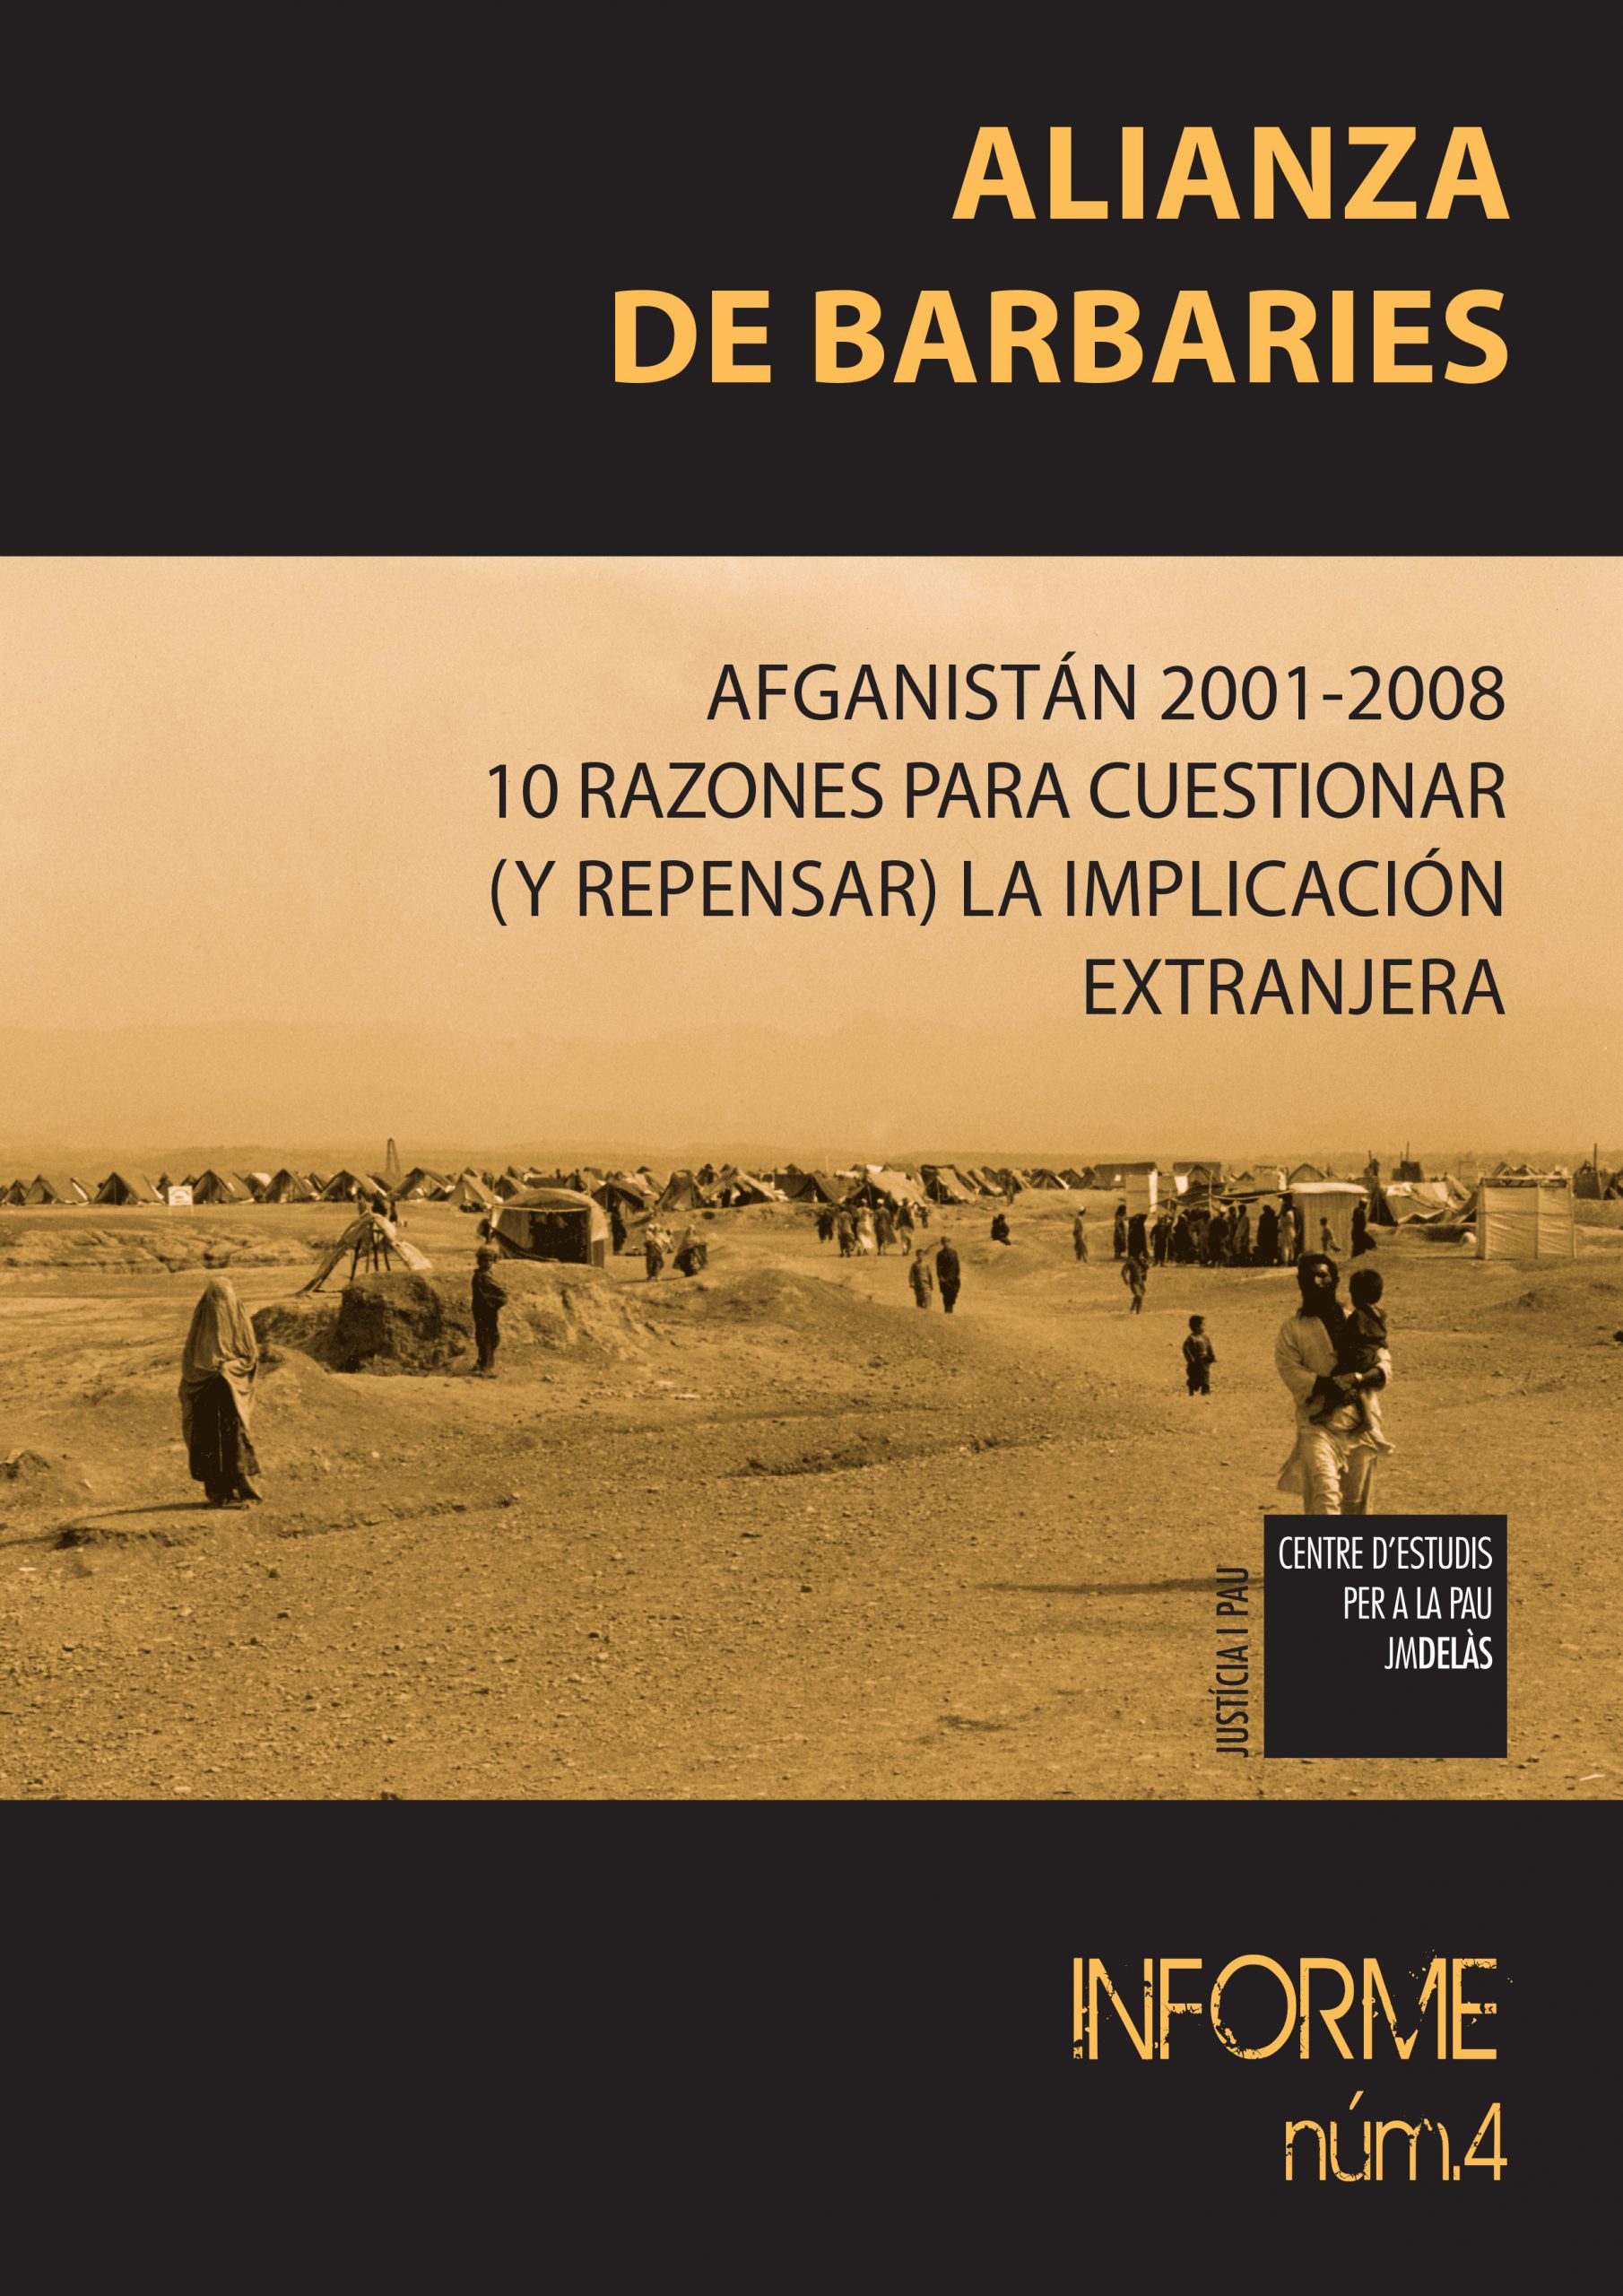 Informe 4: «Alianza de barbaries. Afganistán 2001-2008. 10 razones para cuestionar (y repensar) la implicación extranjera»